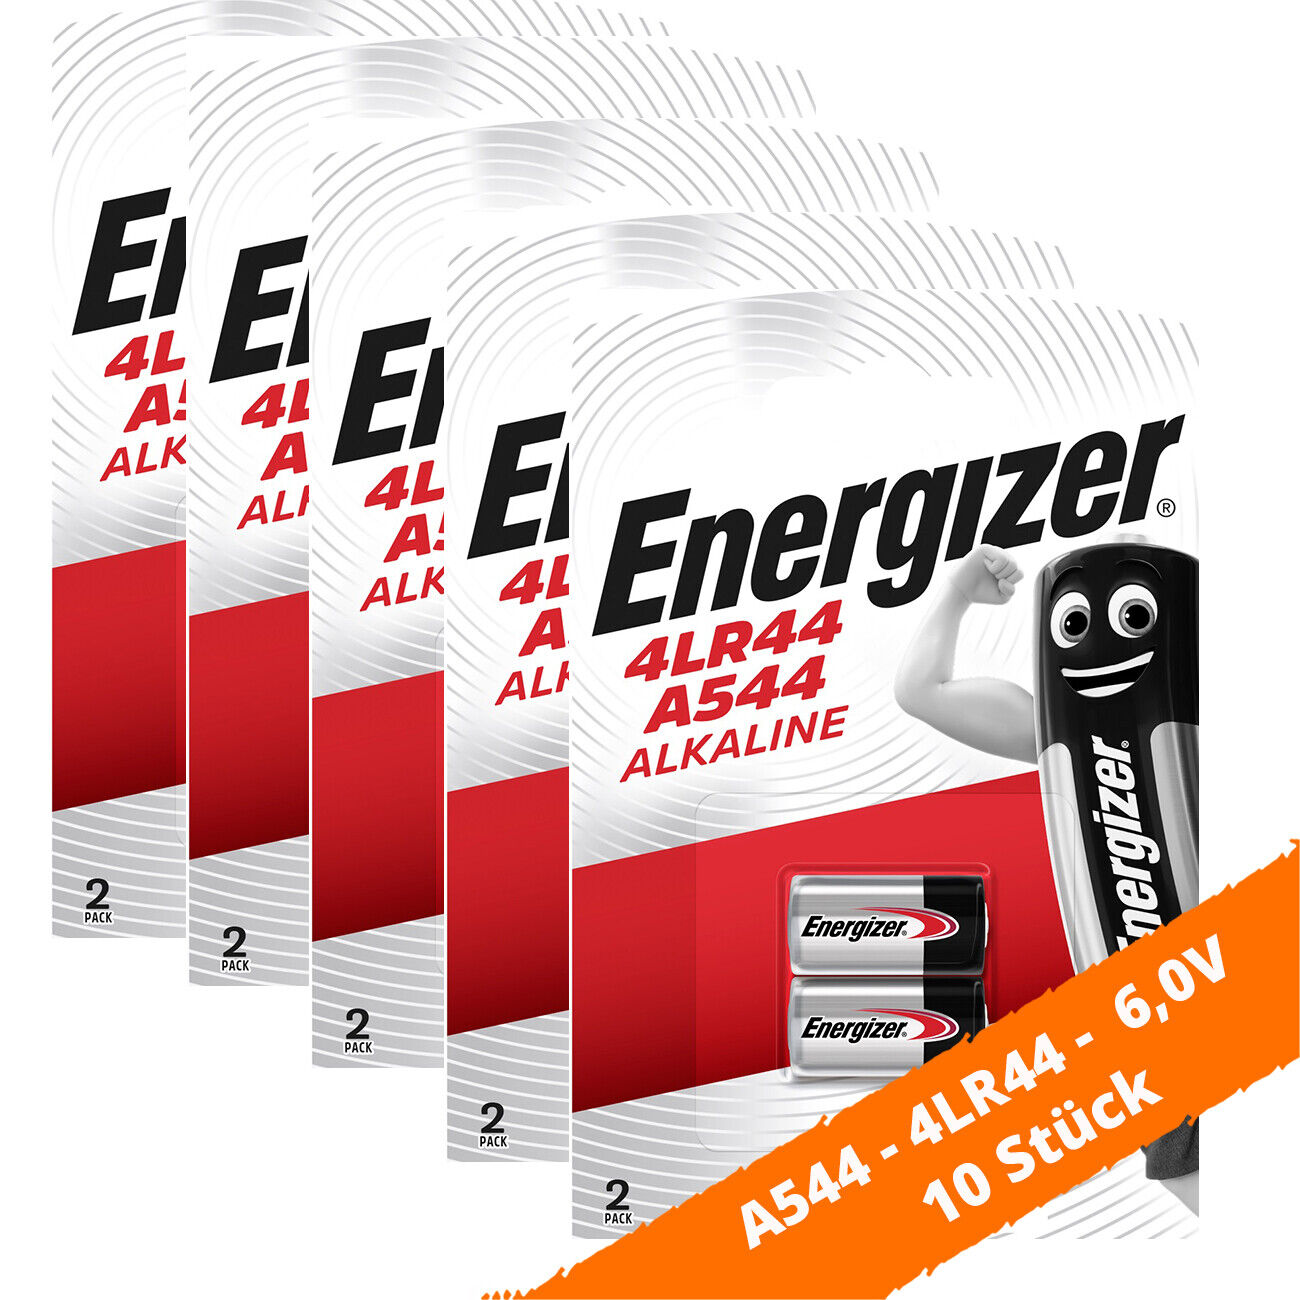 10 x Energizer A544 4LR44 6V Foto Batterie V4030PX PX28A Alkaline Batterie